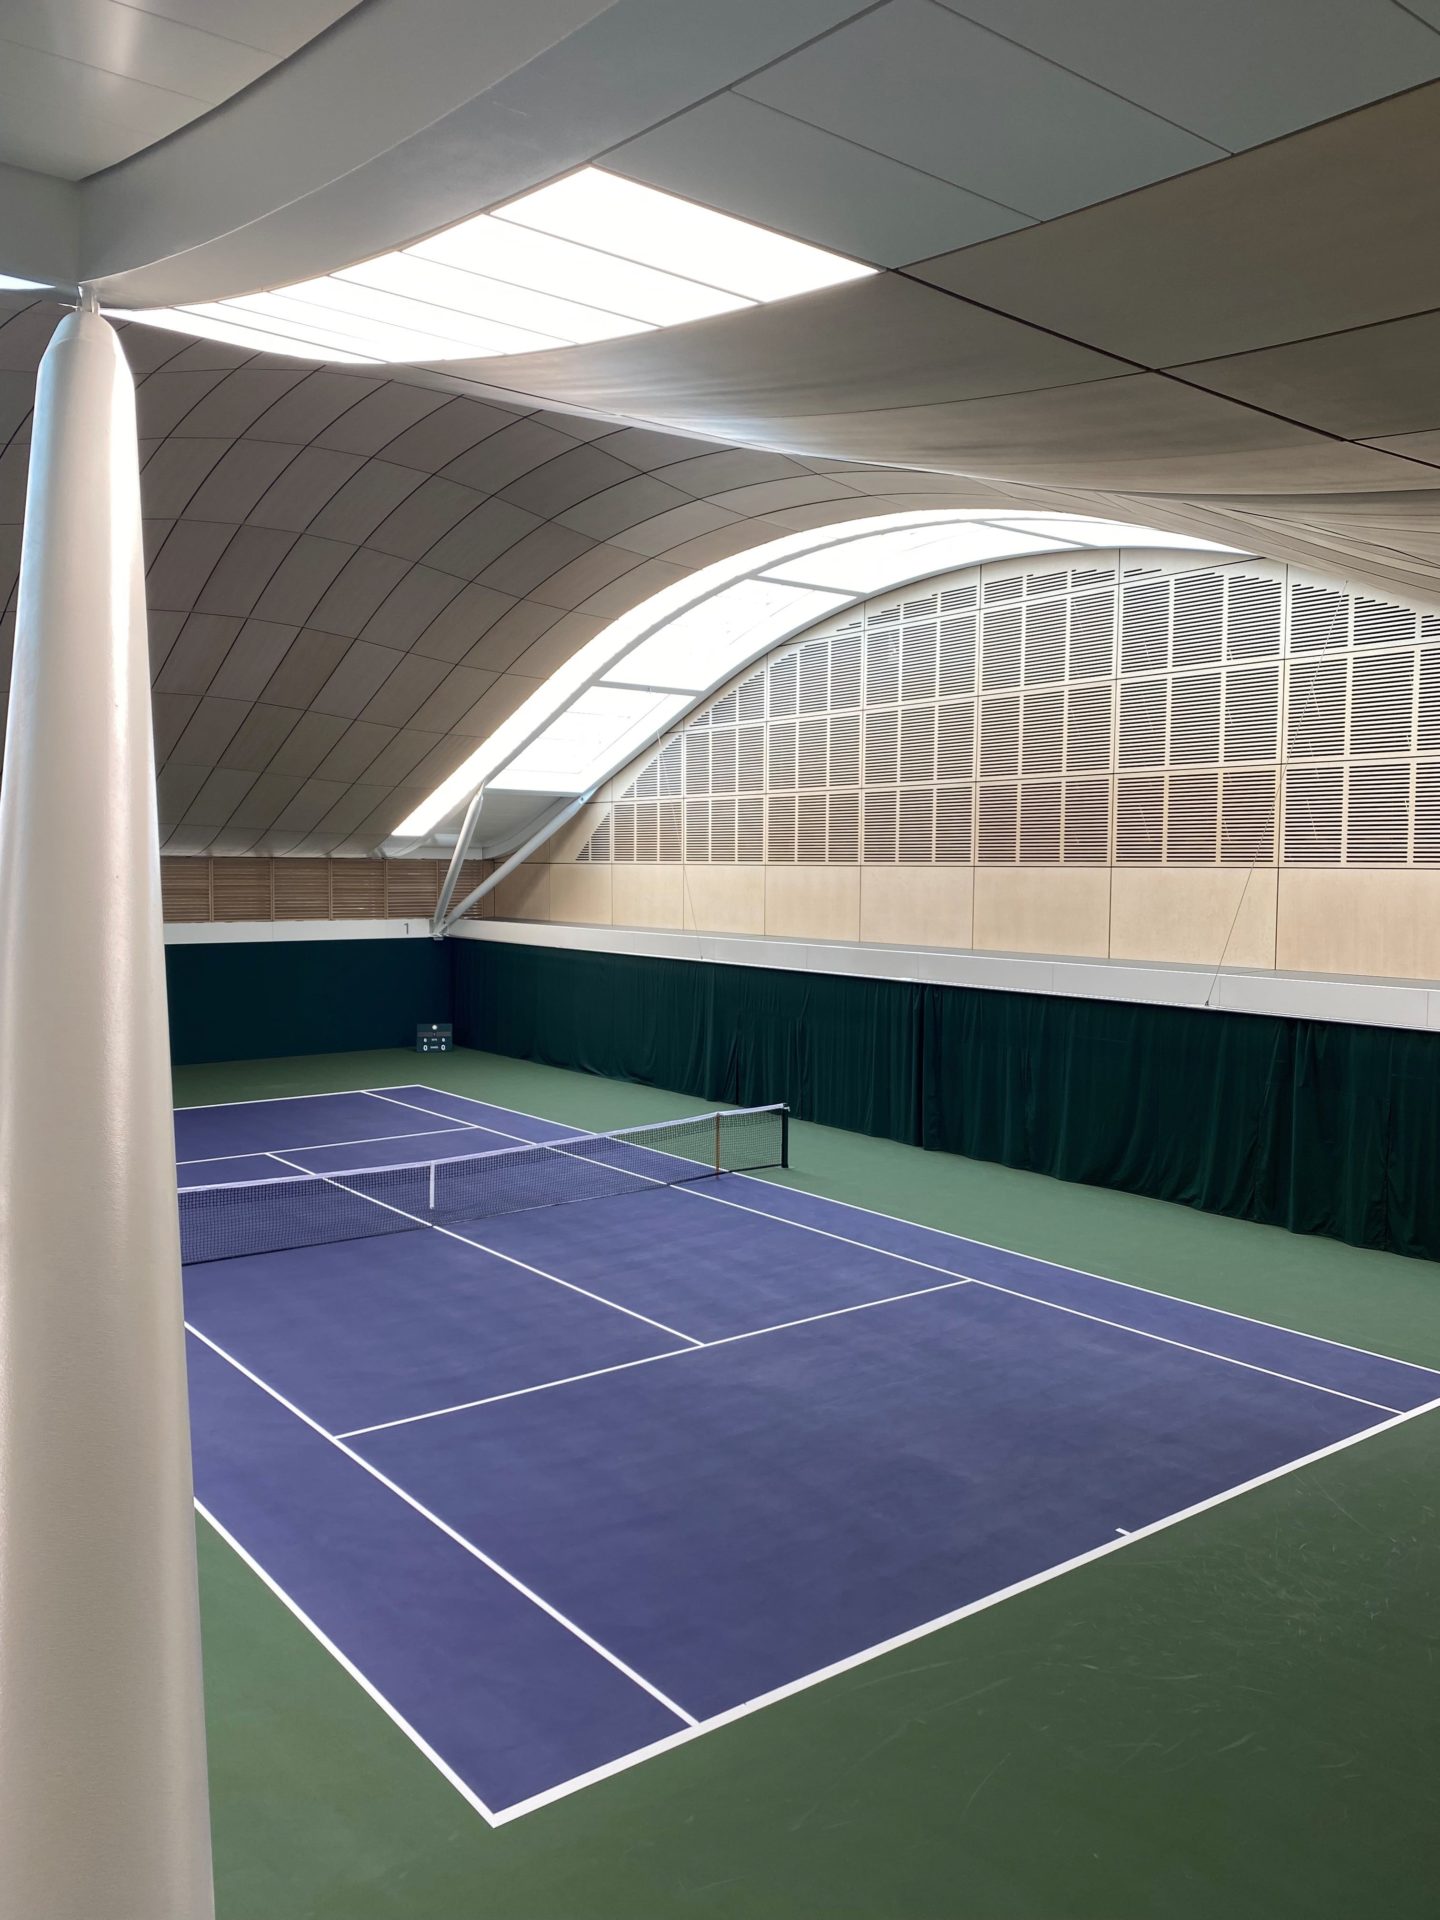 Wimbledon tennis complex - View of an indoors tennis court